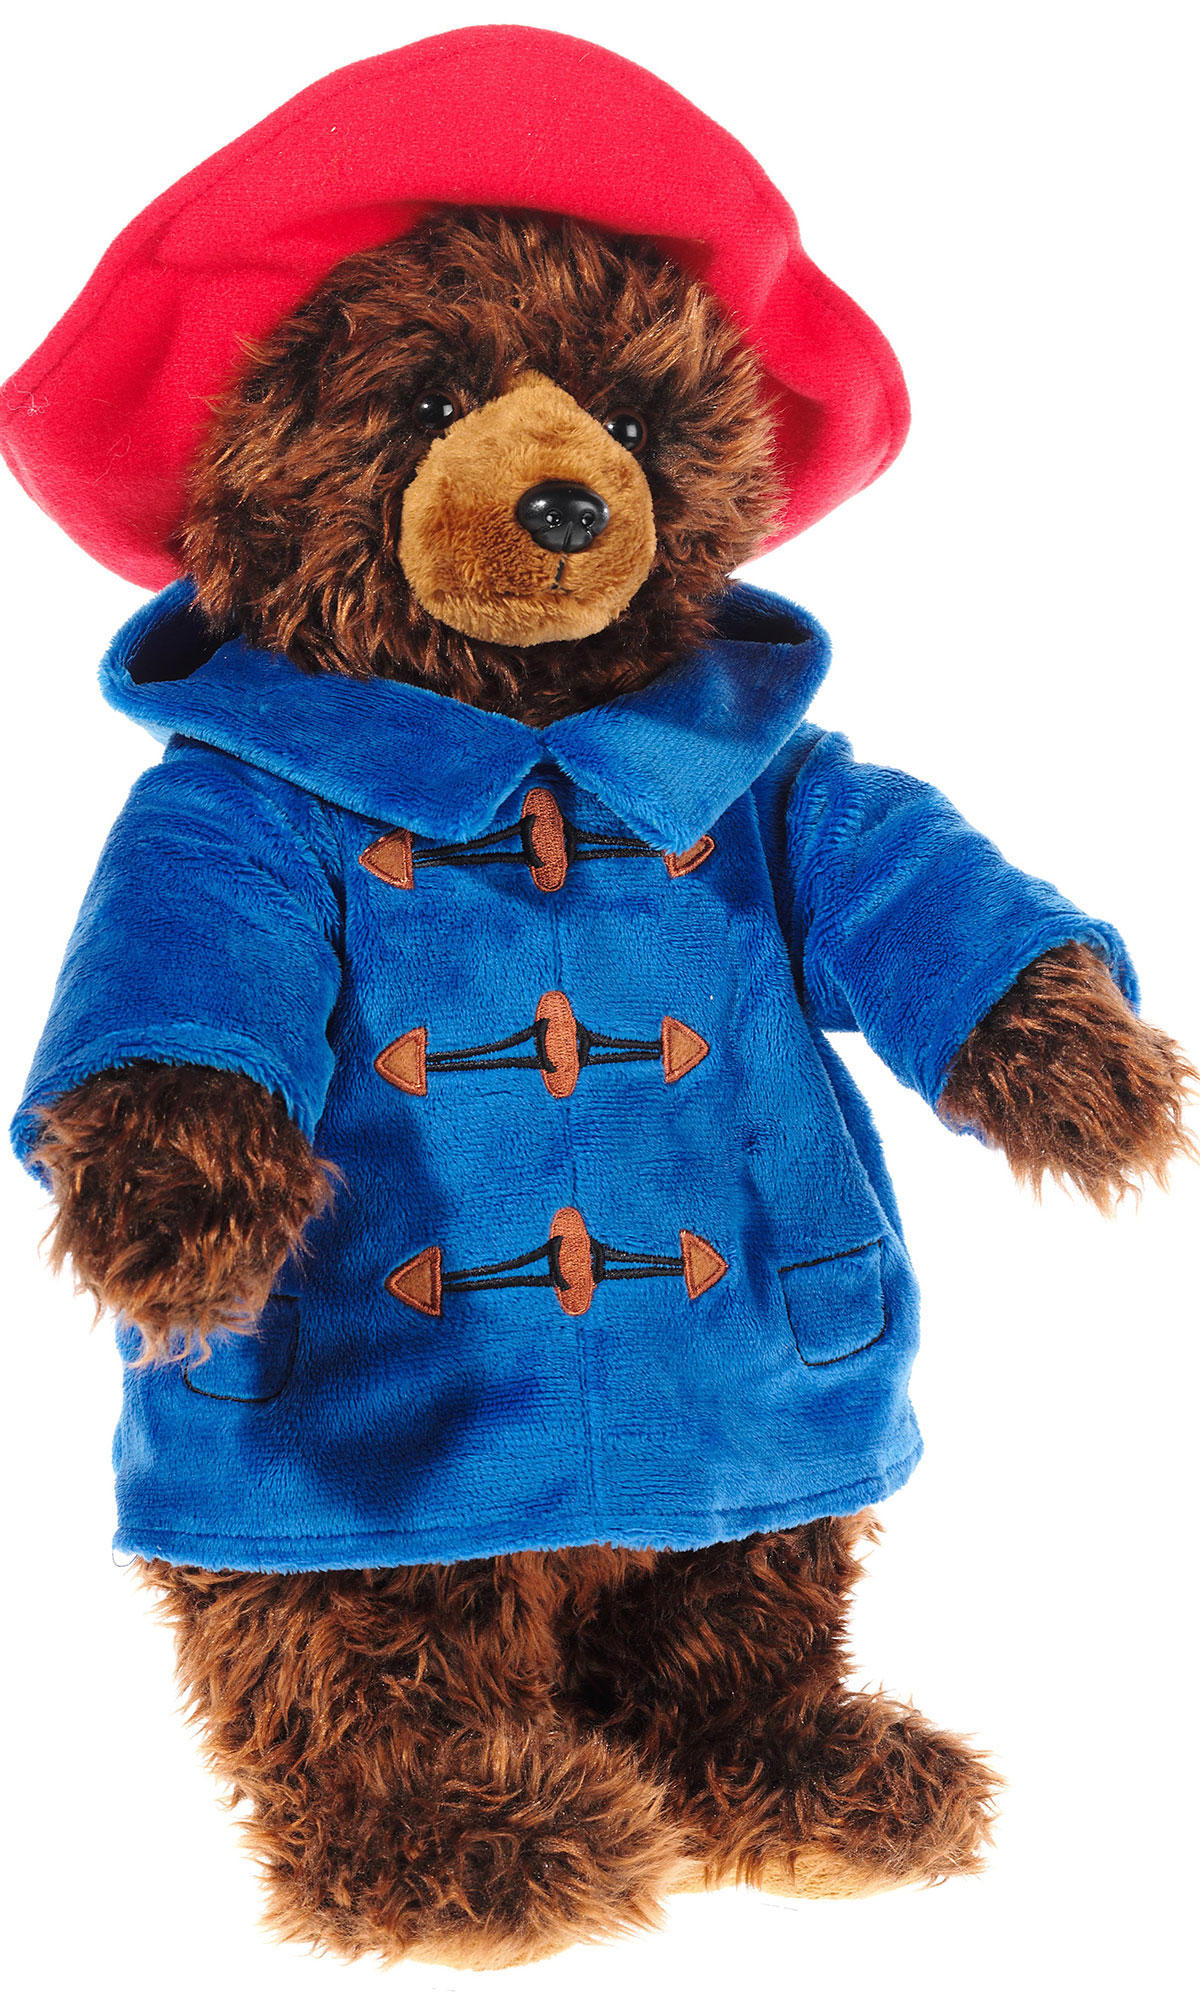 Heunec Paddington Bär mit seinem roten Hut und blauem Mantel in der 40cm Ausführung